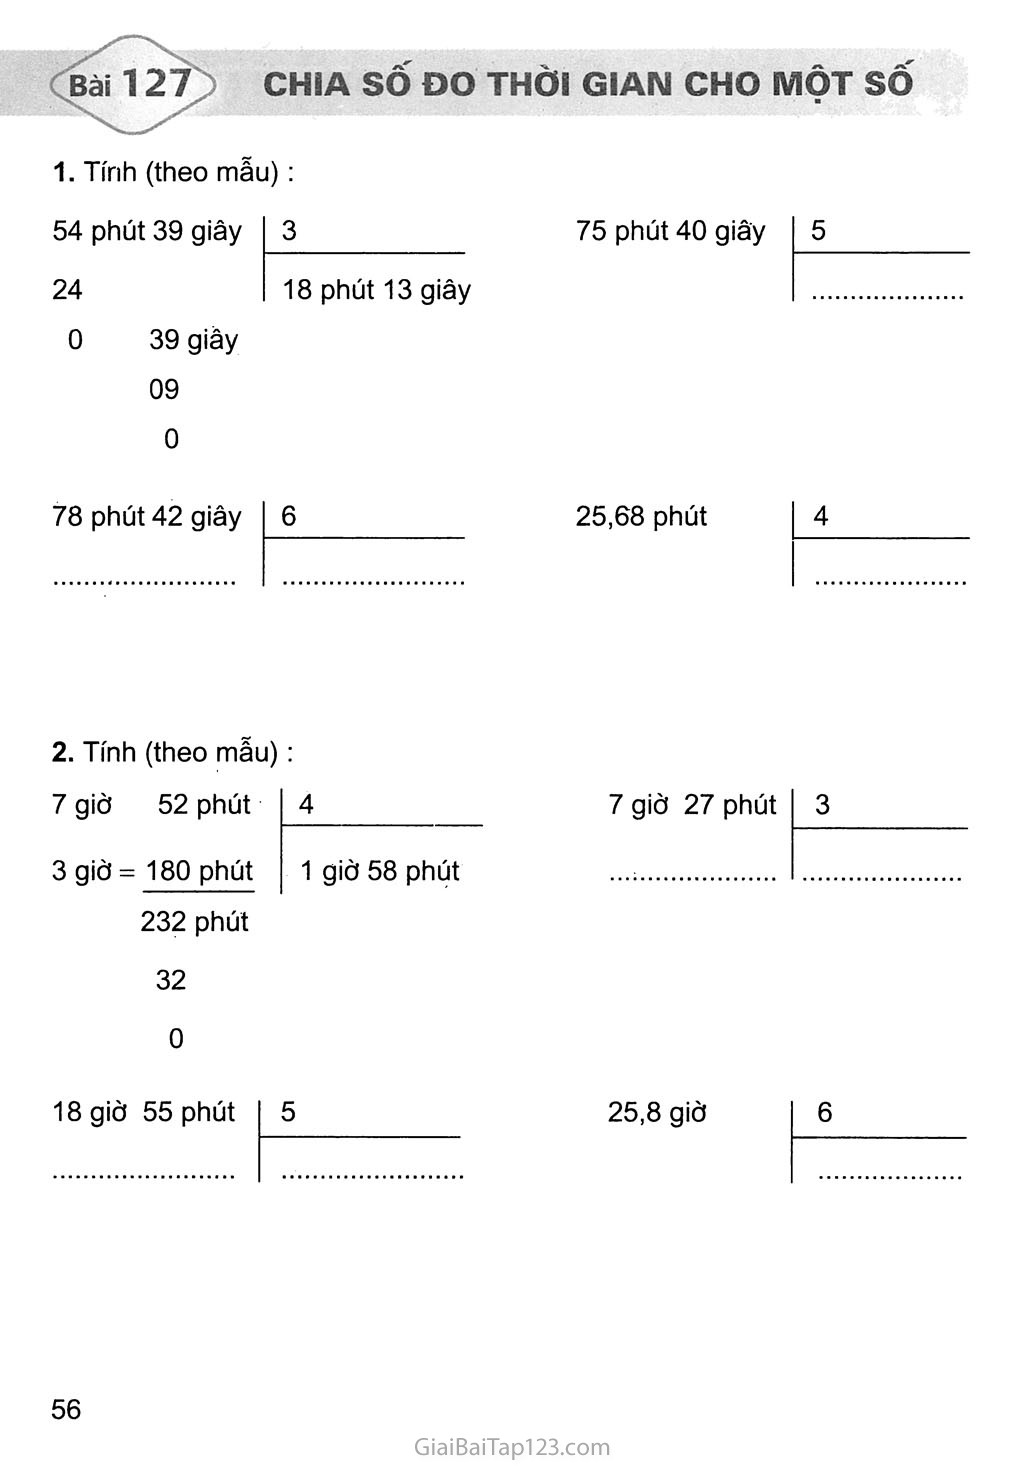 Bài 127: Chia số đo thời gian với một số trang 1